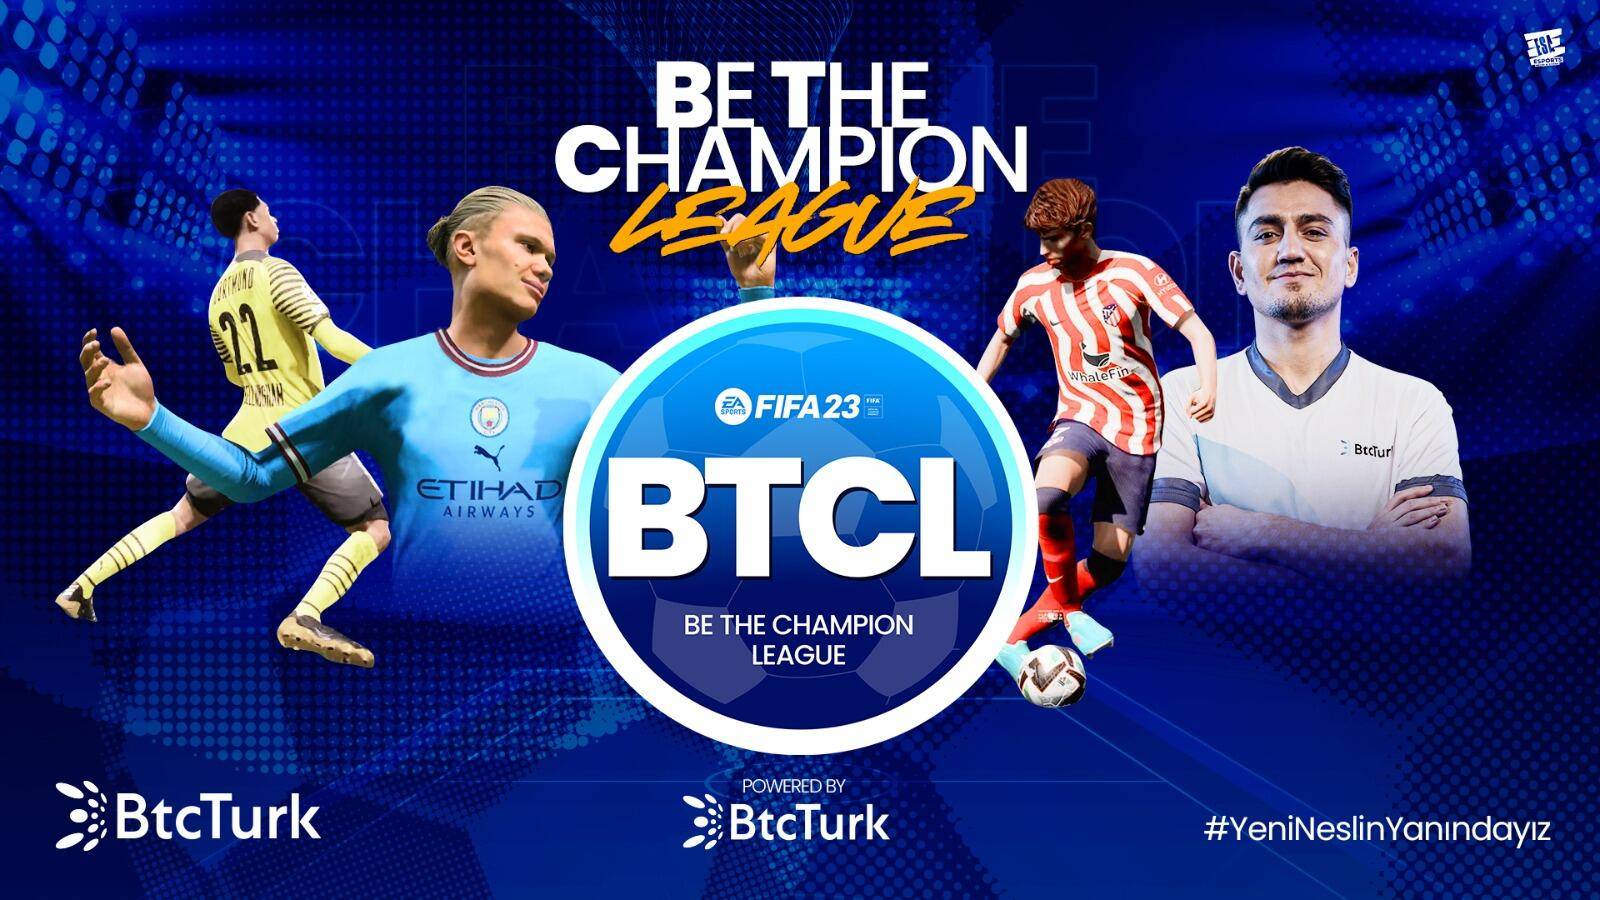 BTC League FIFA Espor Turnuvası’nda Şampiyonluk Kupası Digital Athletics’in Oldu!